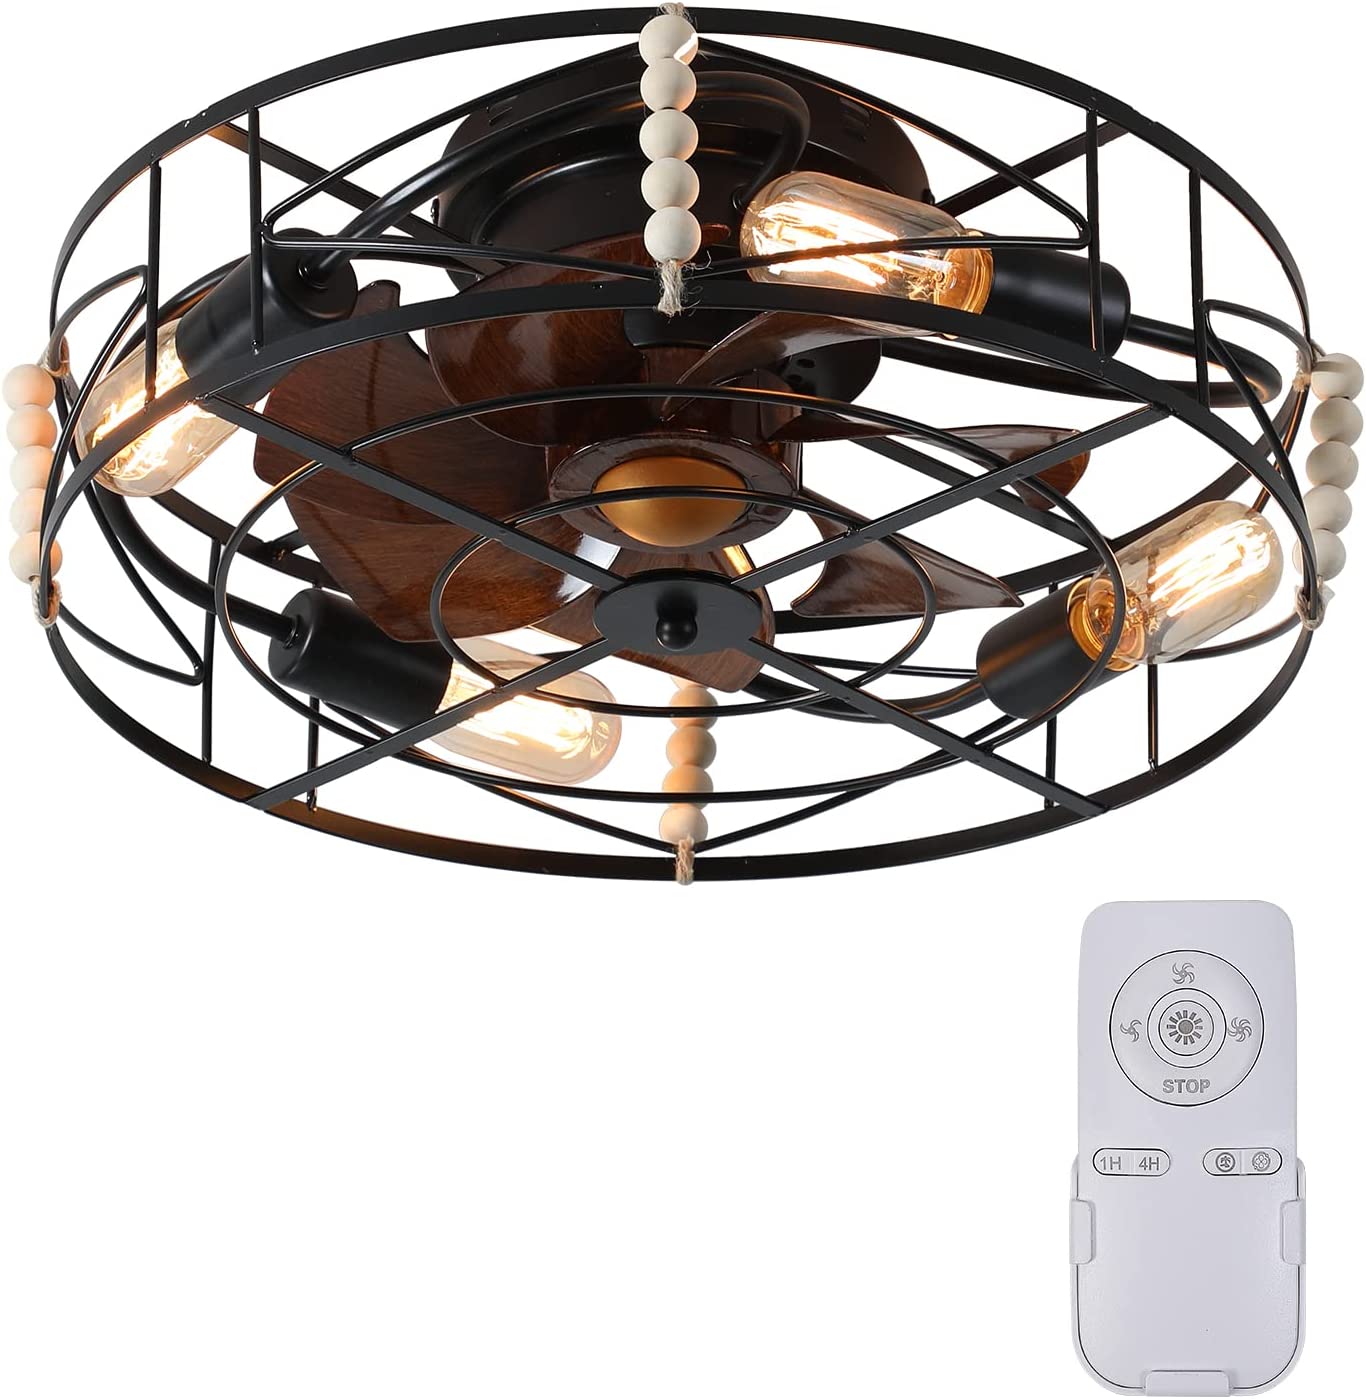 پنکه سقفی با چراغ XIPUDA Caged Boho Ceiling Fan with Lights - ارسال 15 الی 20 روز کاری